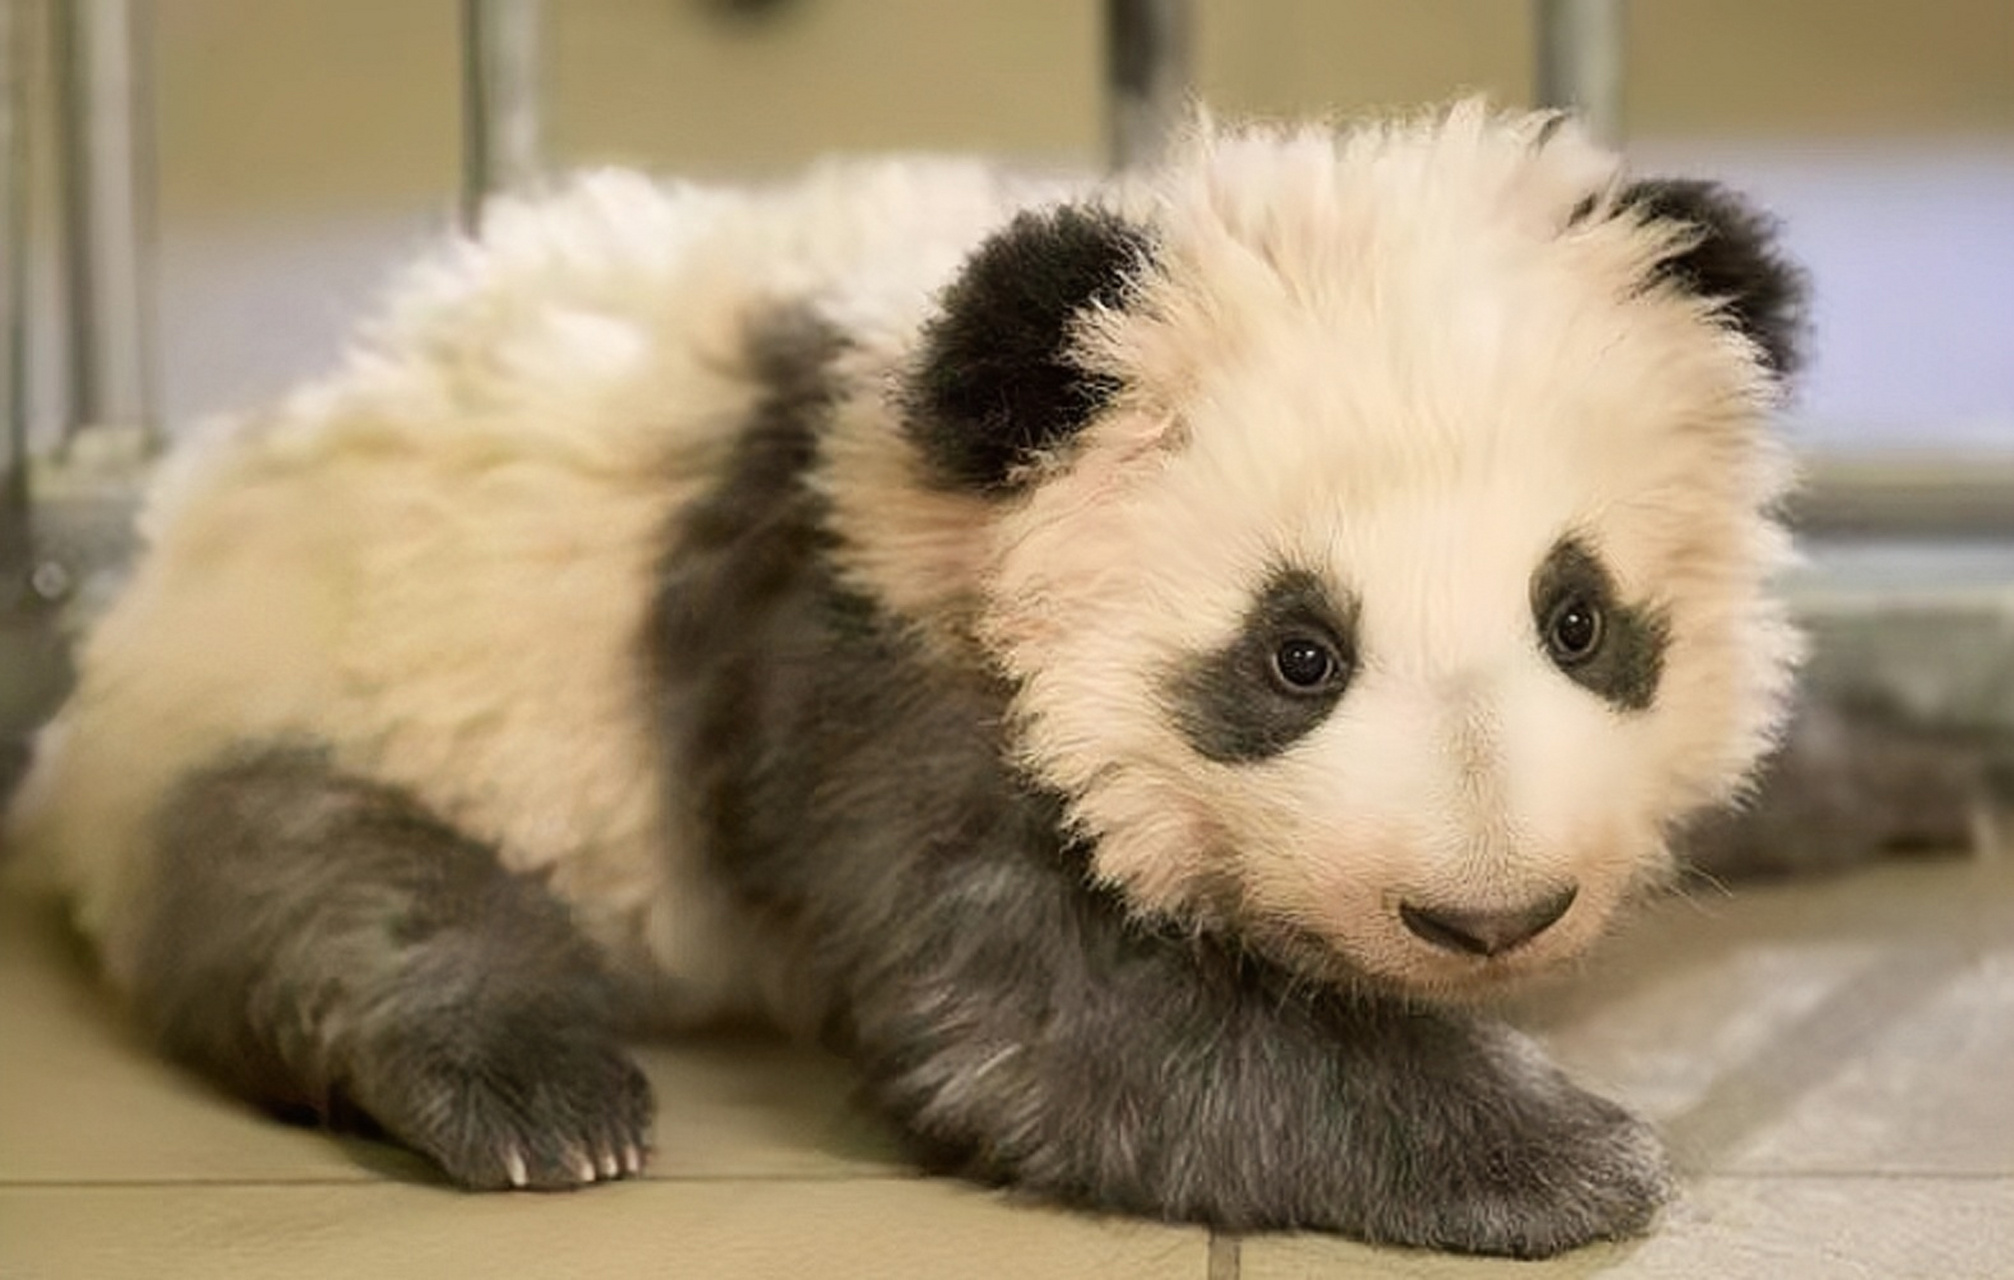 大熊猫圆梦,生日2017年8月4日,出生于法国博瓦勒野生动物园,它是首